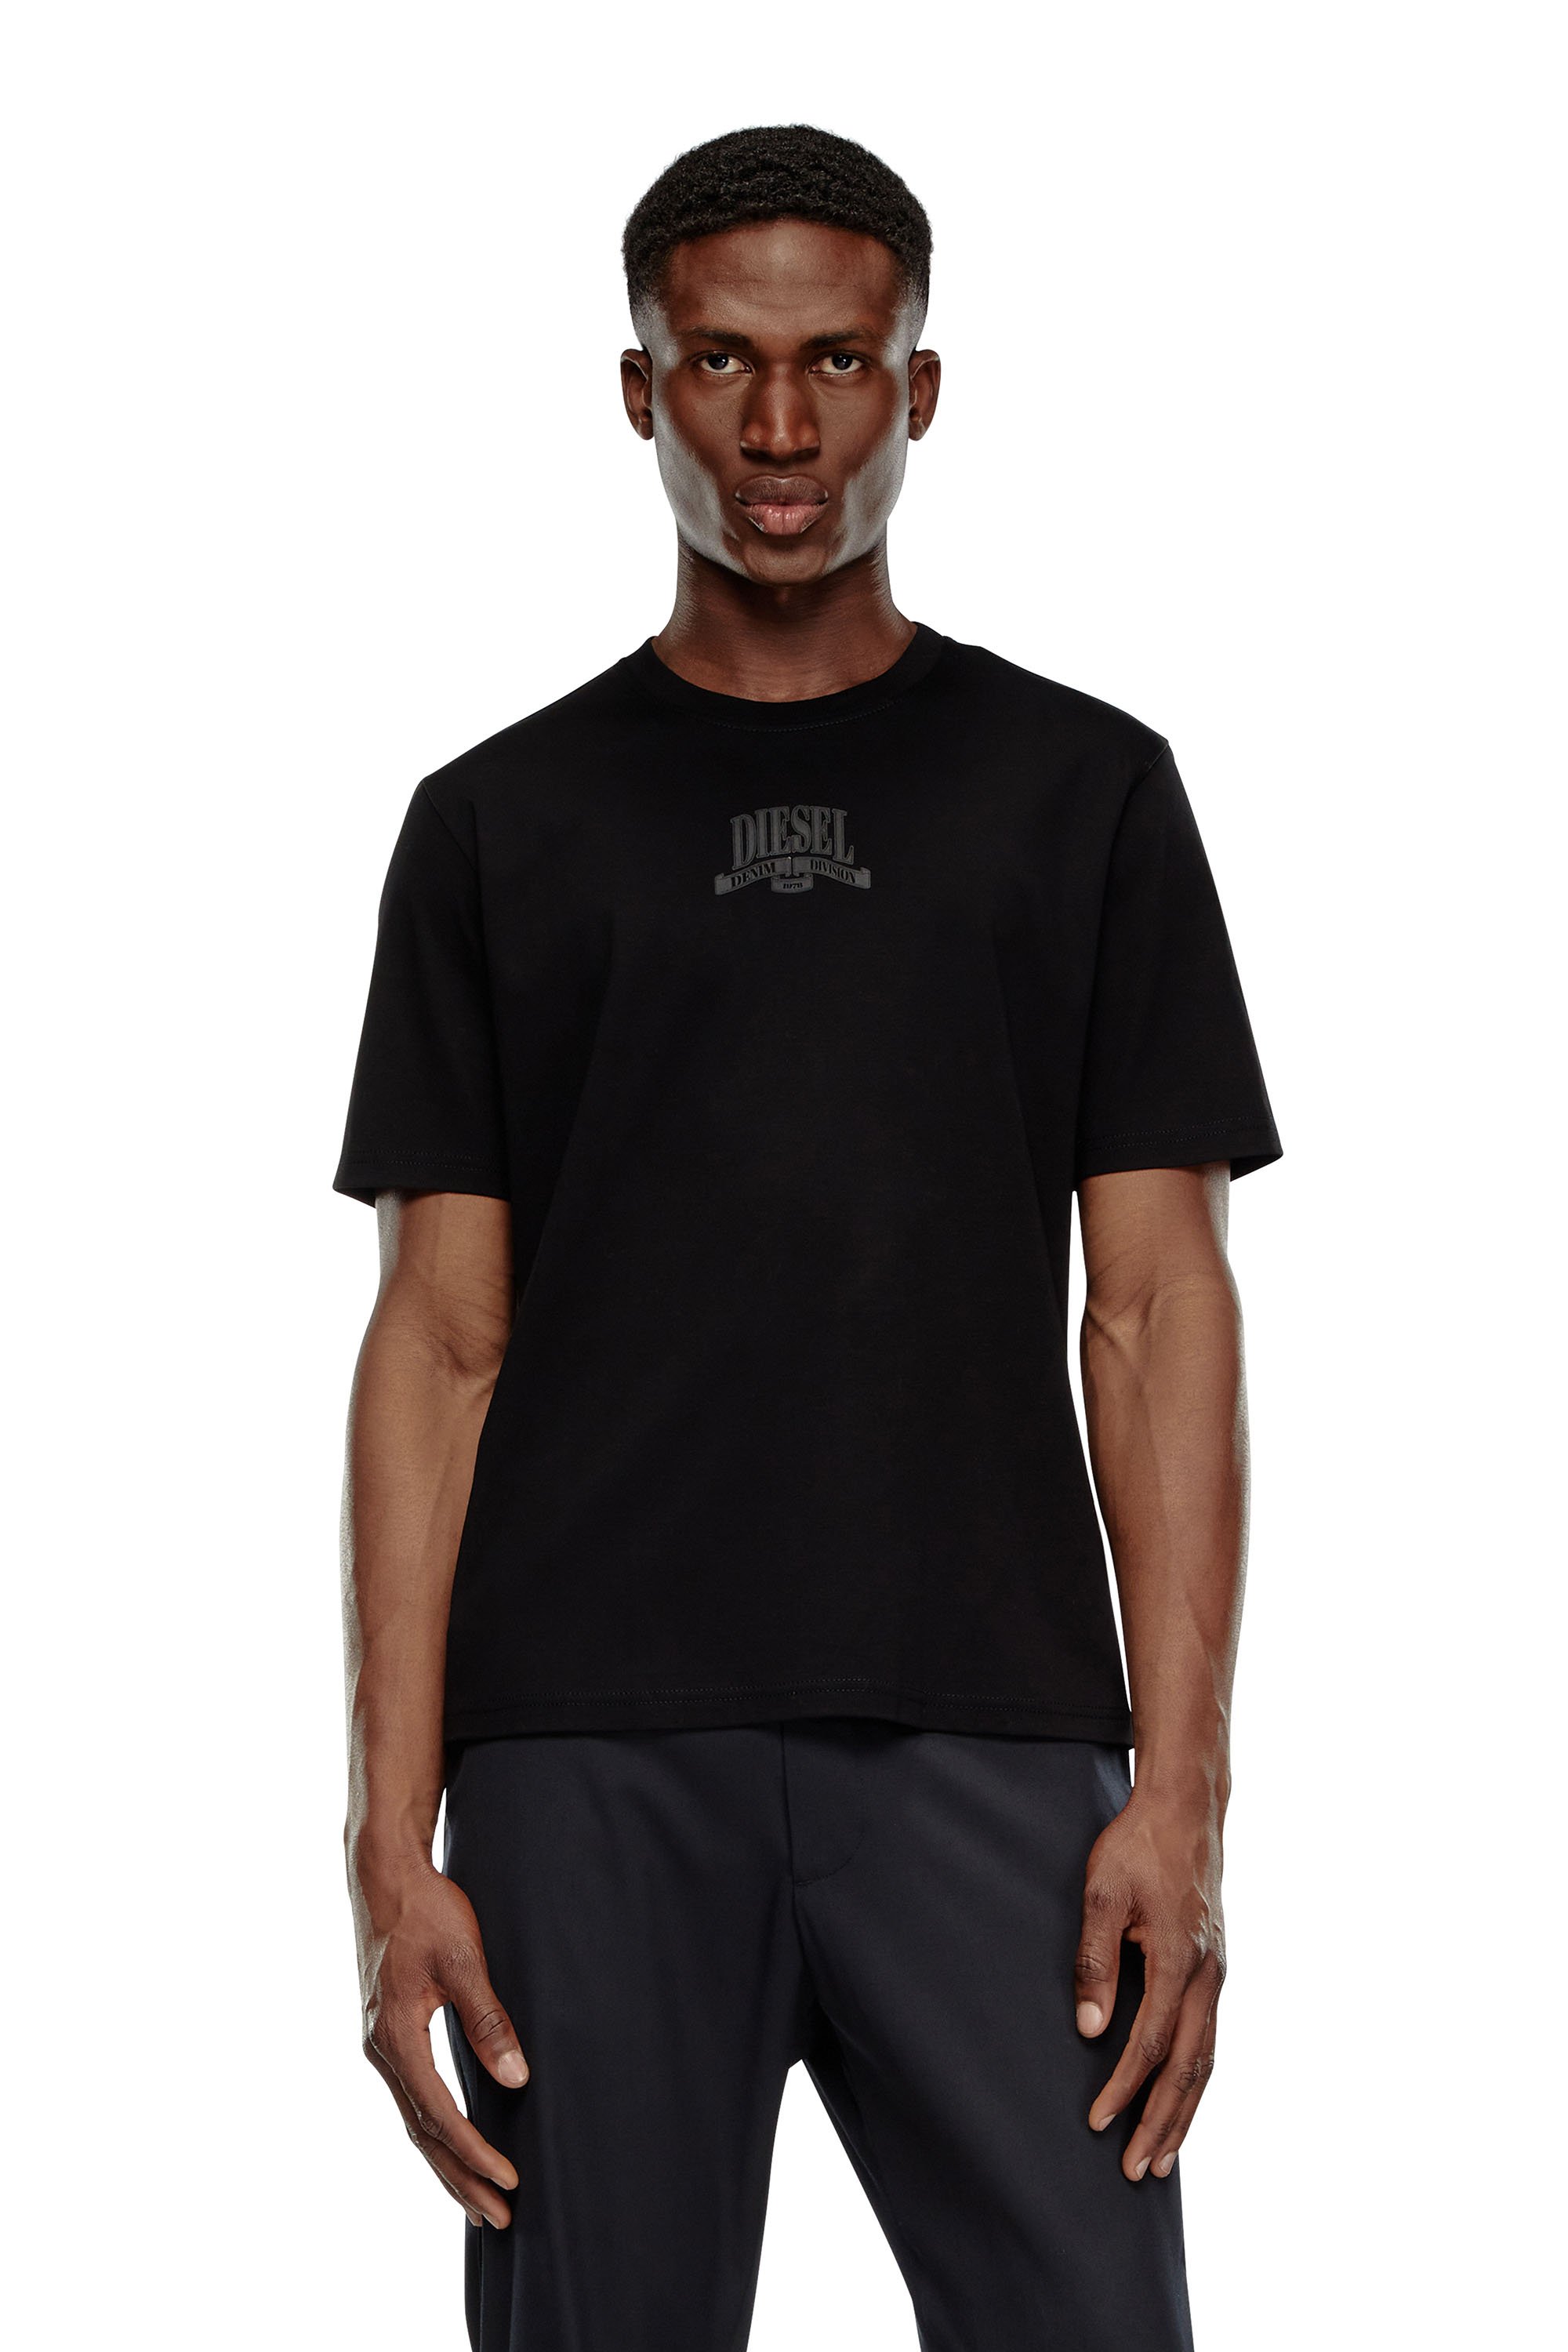 Diesel - T-MADJUST-K1, Hombre Camiseta de interlock con estampado Diesel a tono in Negro - Image 1